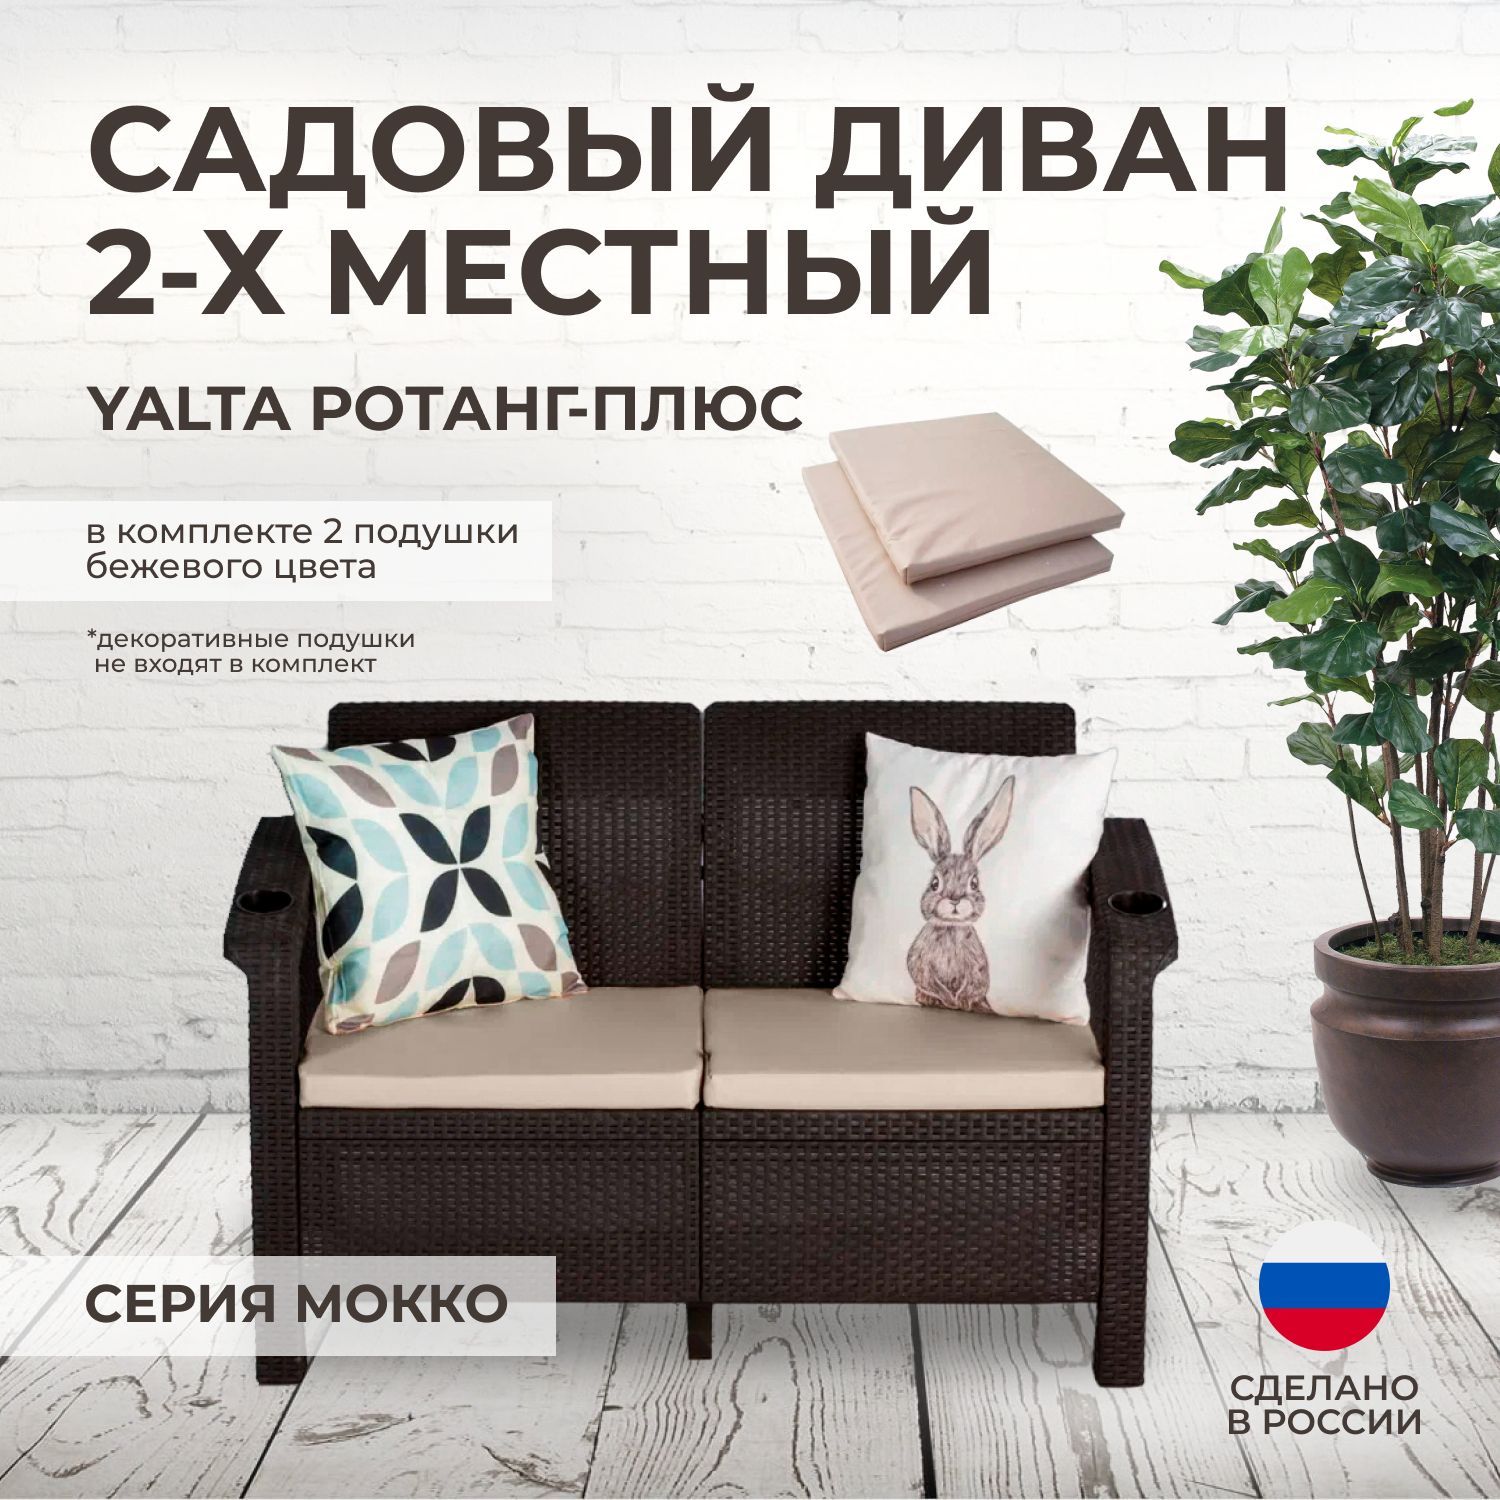 Диван двухместный YALTA SOFA SEAT (Ротанг-Плюс) бежевые подушки - купить сдоставкой по выгодным ценам в интернет-магазине OZON (610681647)